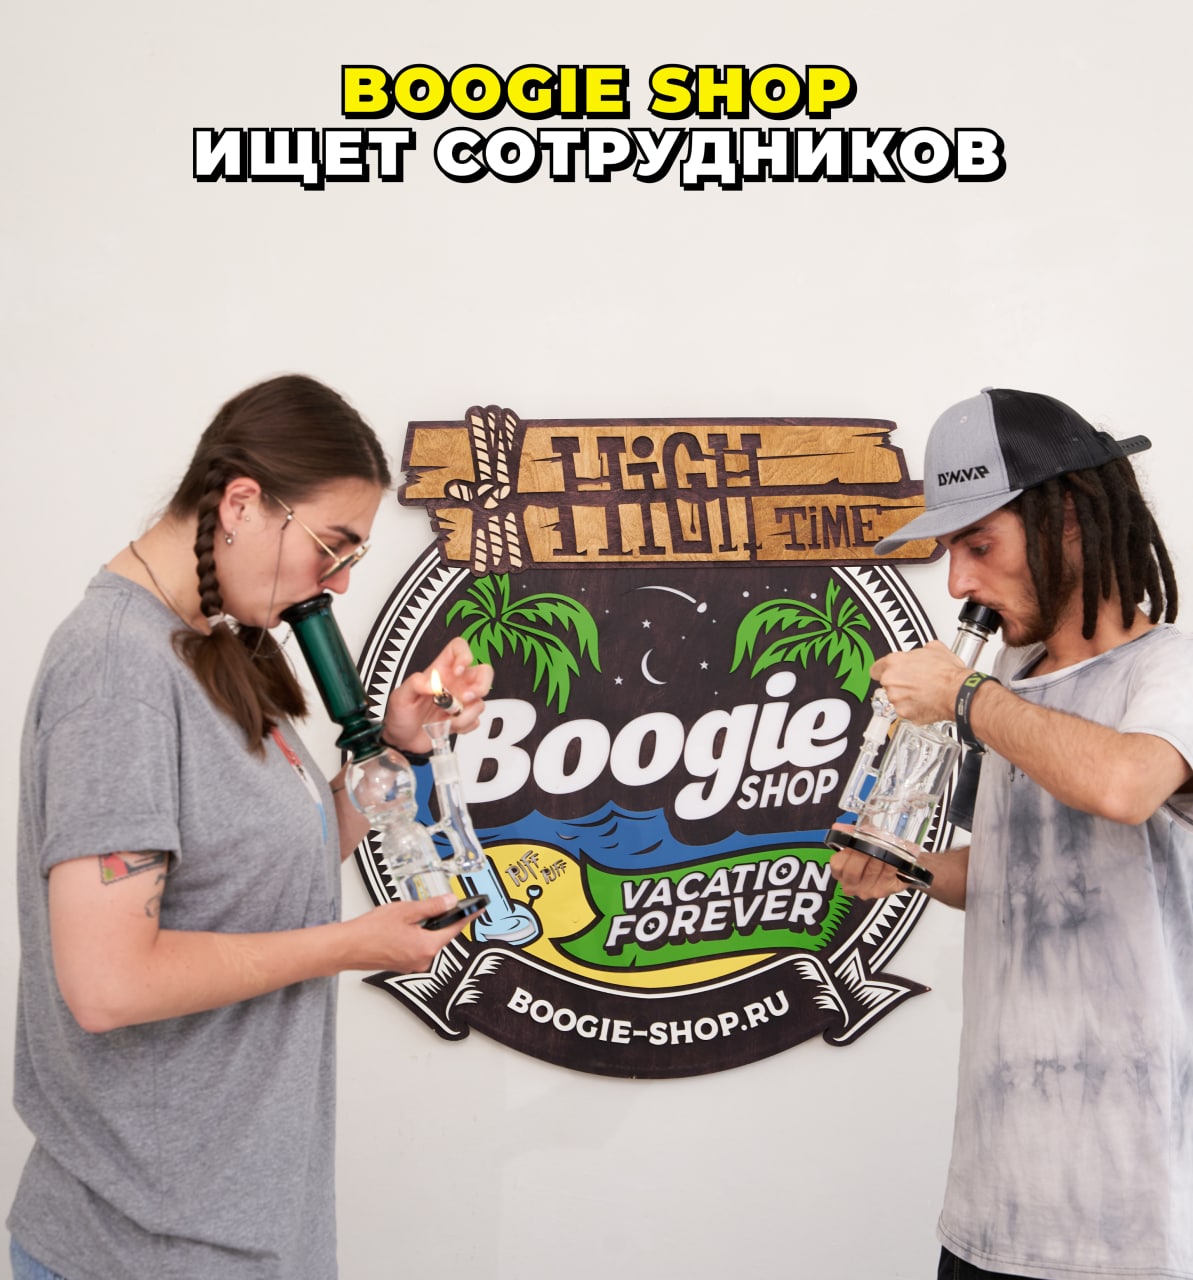 Boogie shop промокод